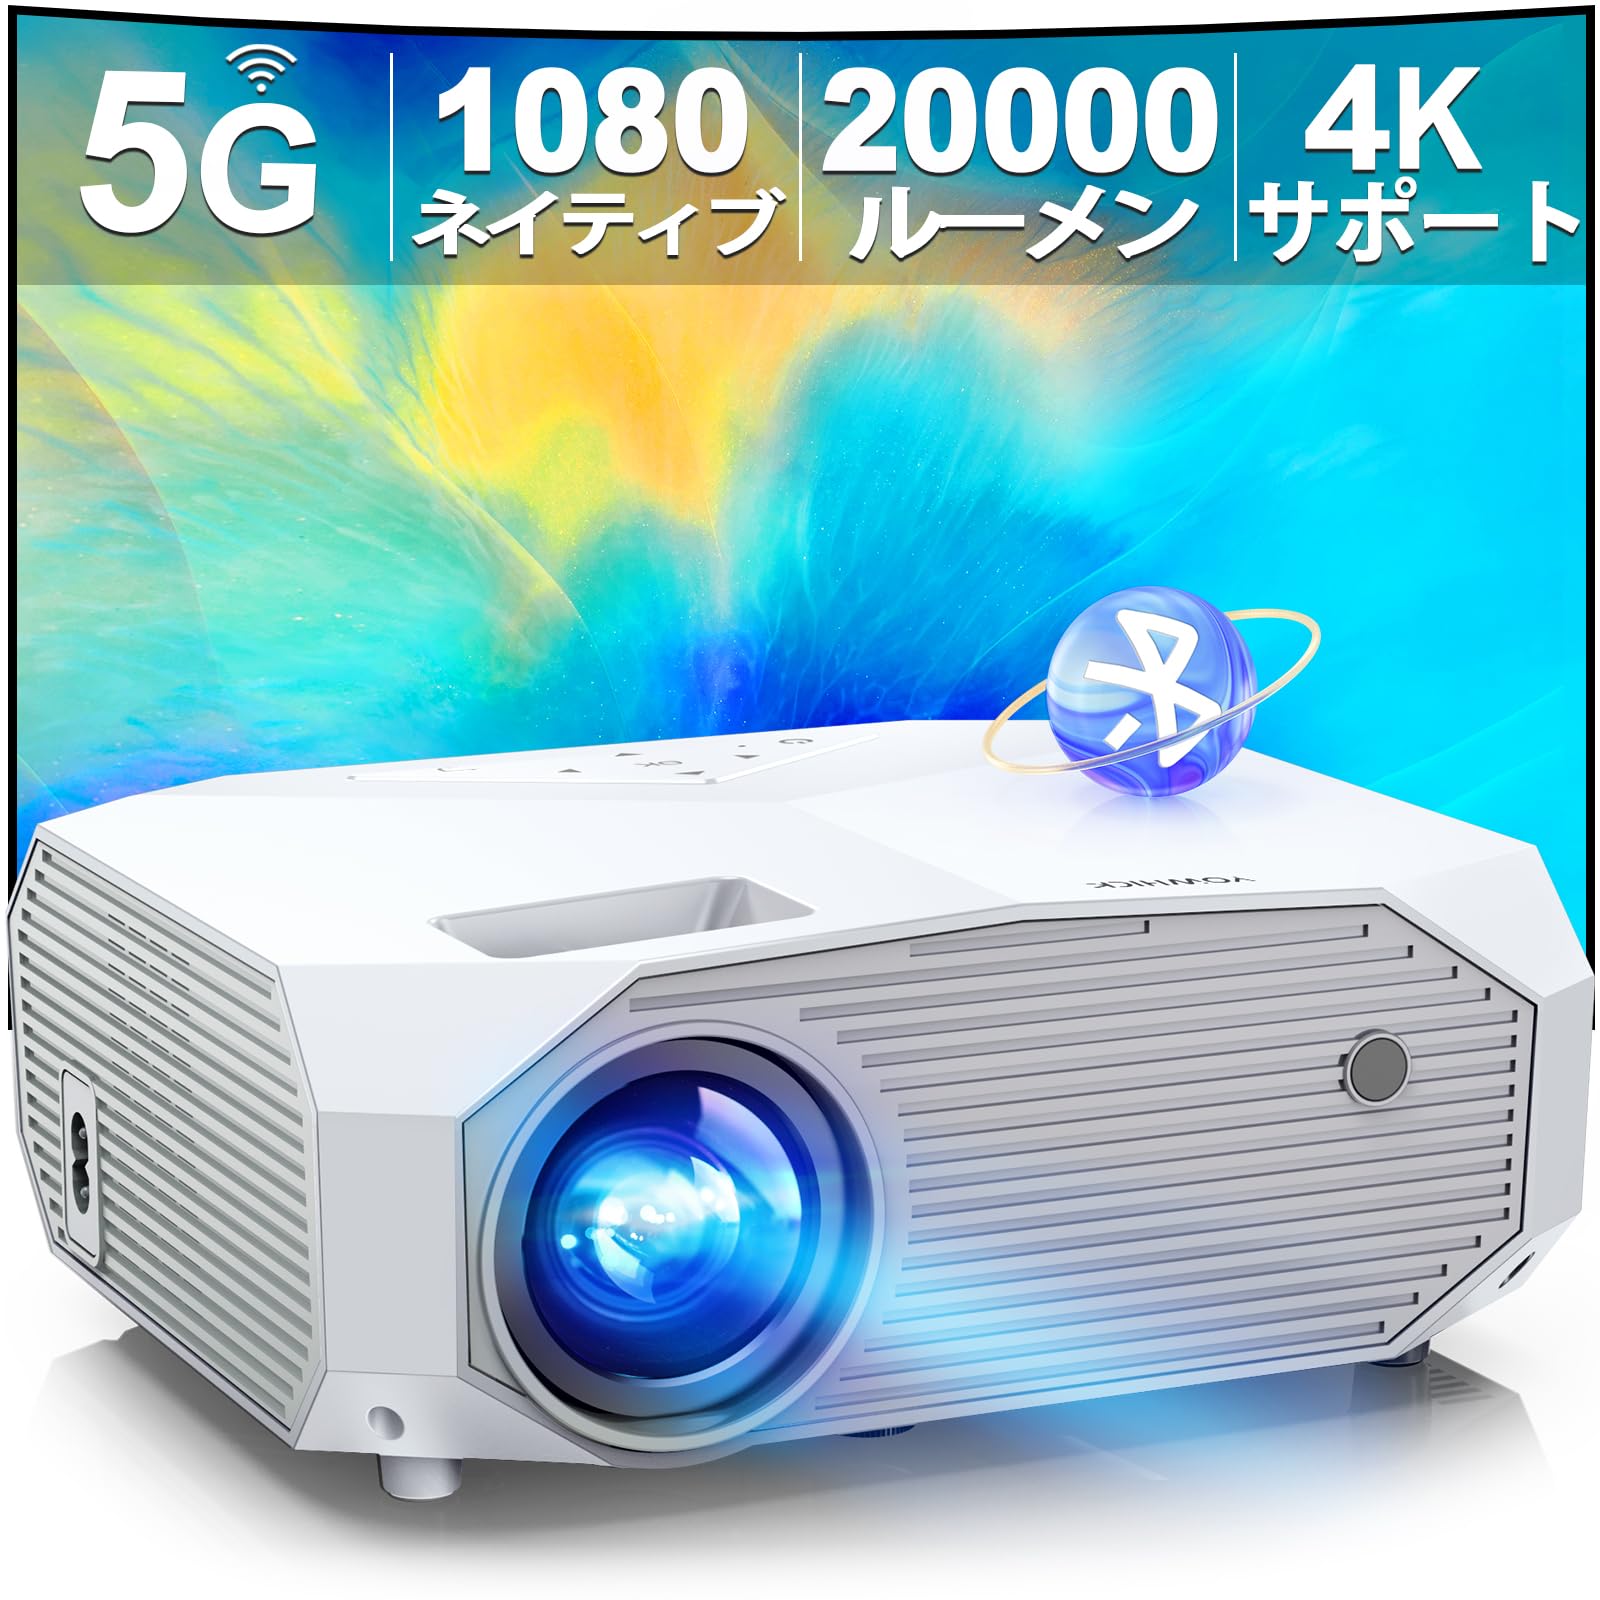 小型家庭用プロジェクター 高解像度高輝度1080p対応 明るさ8000L